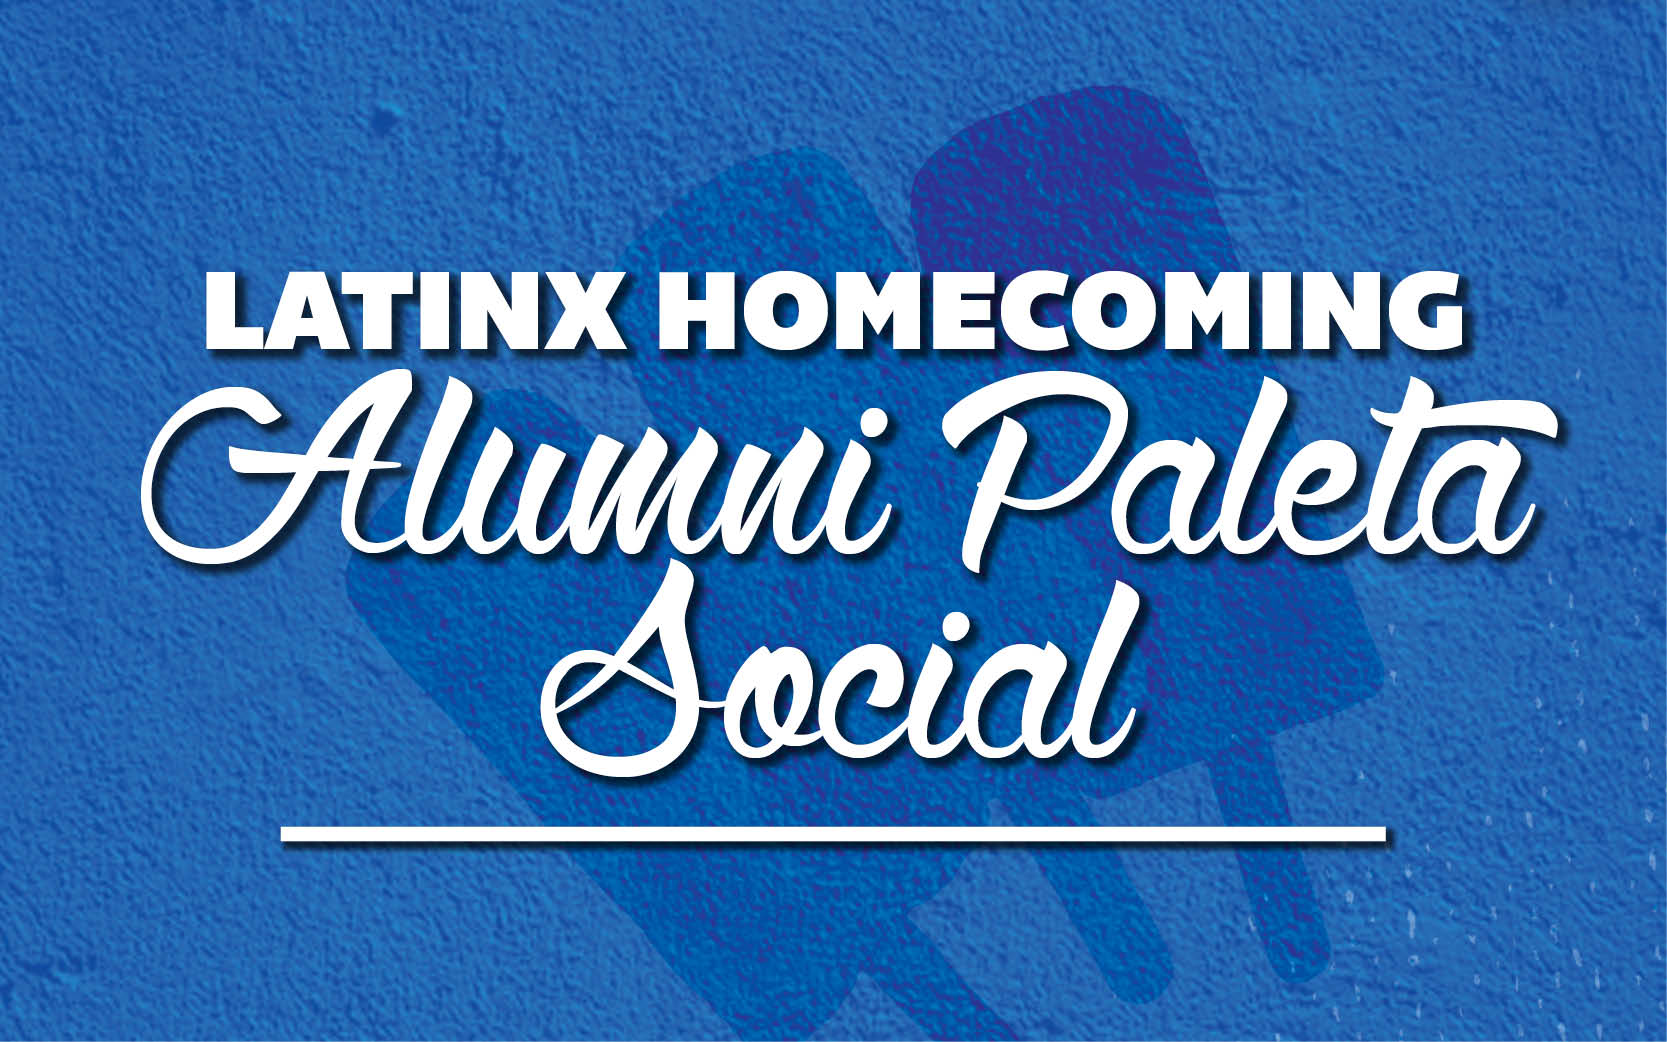 Latinx Homecoming Paleta Social